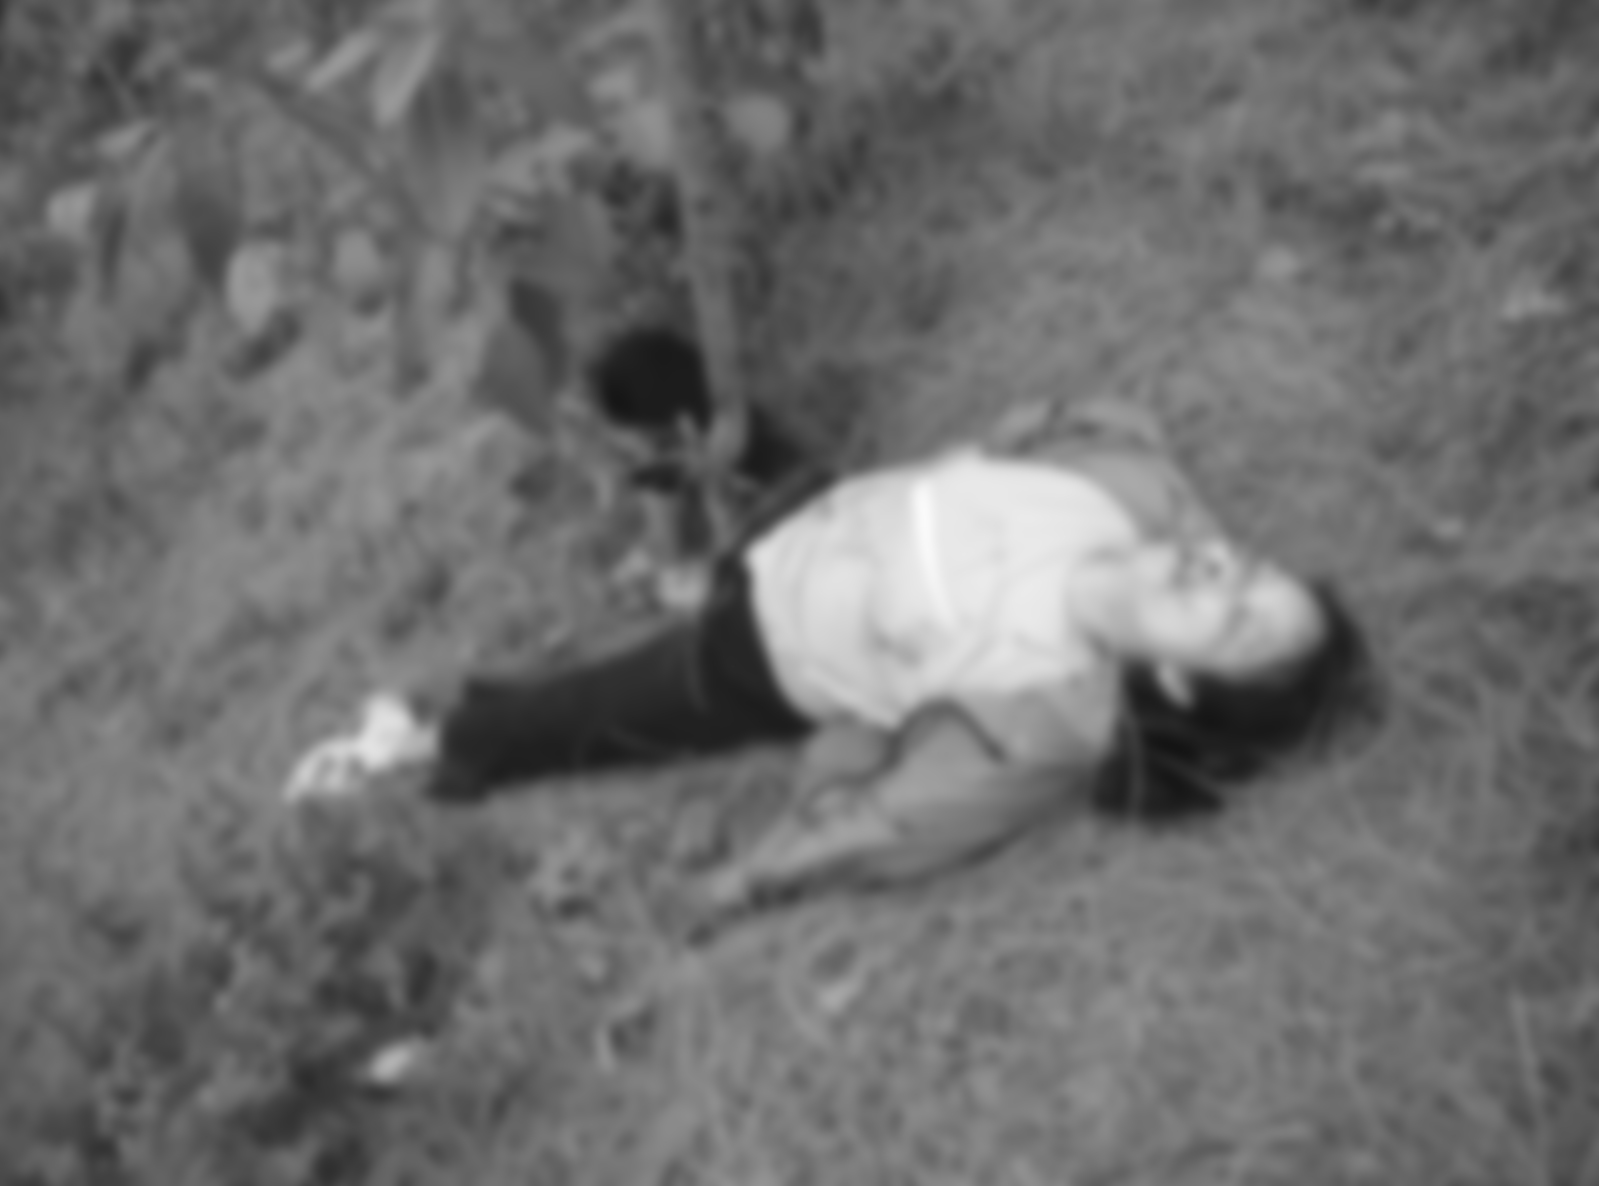 पशुपति क्याम्पसमा अध्ययनरत छात्रा जगडोल जंगलमा मृत फेला